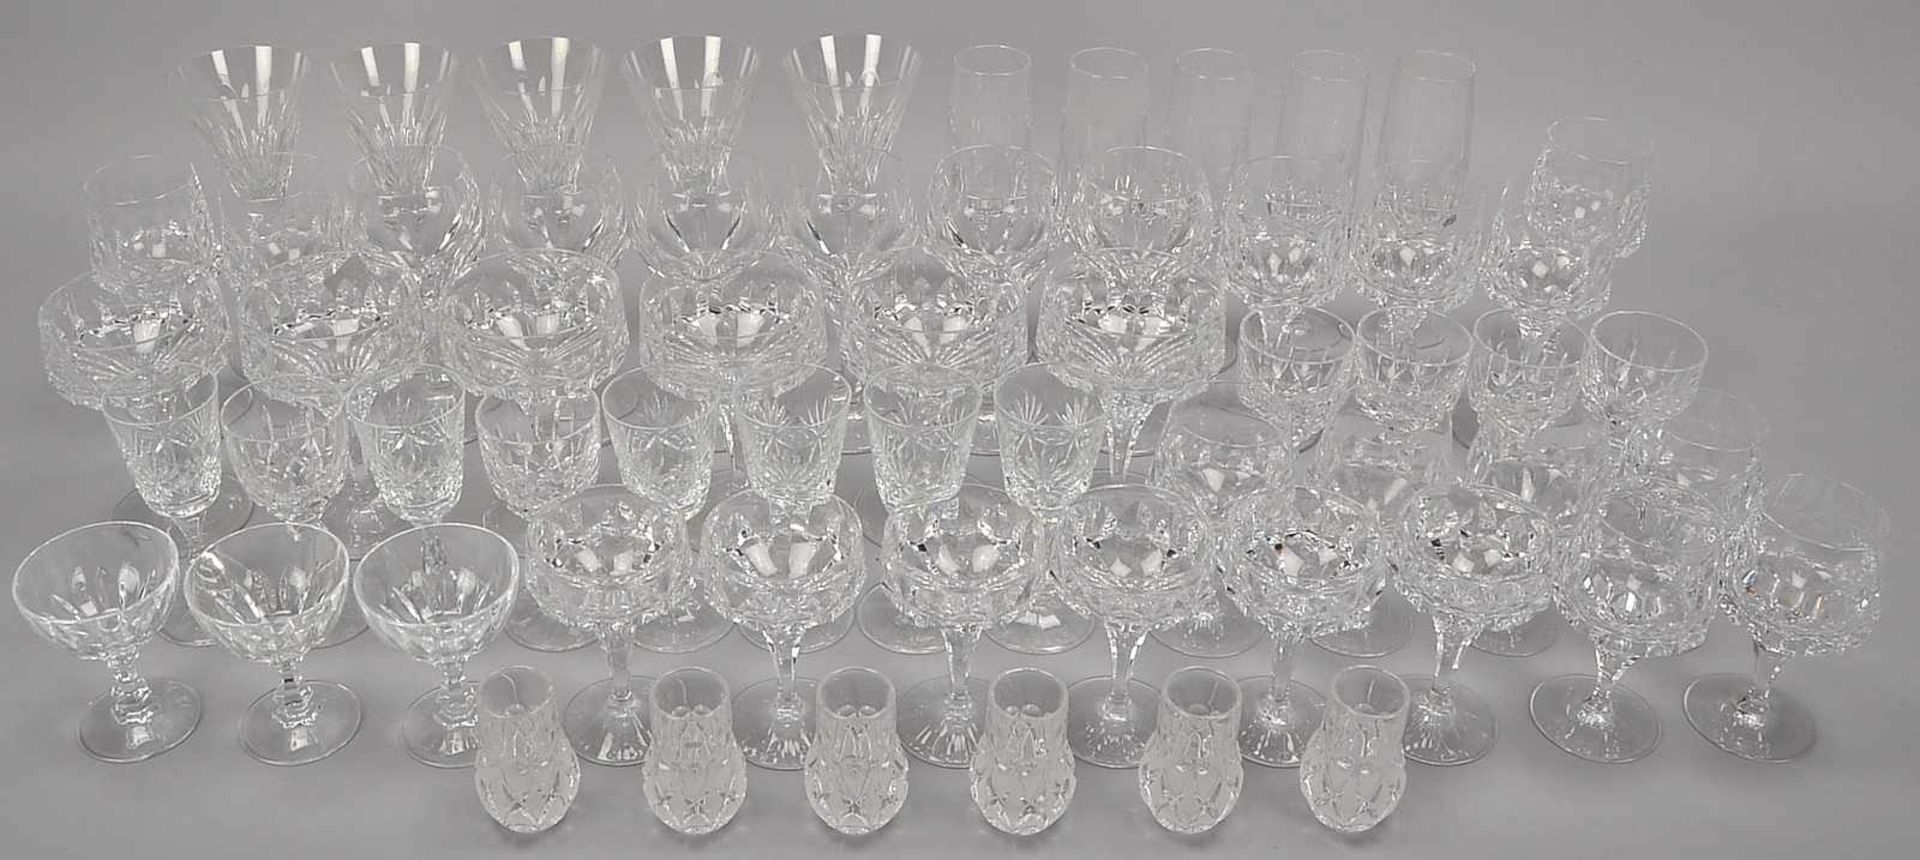 Großes umfangreiches Gläser-Konvolut, u.a. Nachtmann und Peill & Putzler, Kristallglas, verschiedene